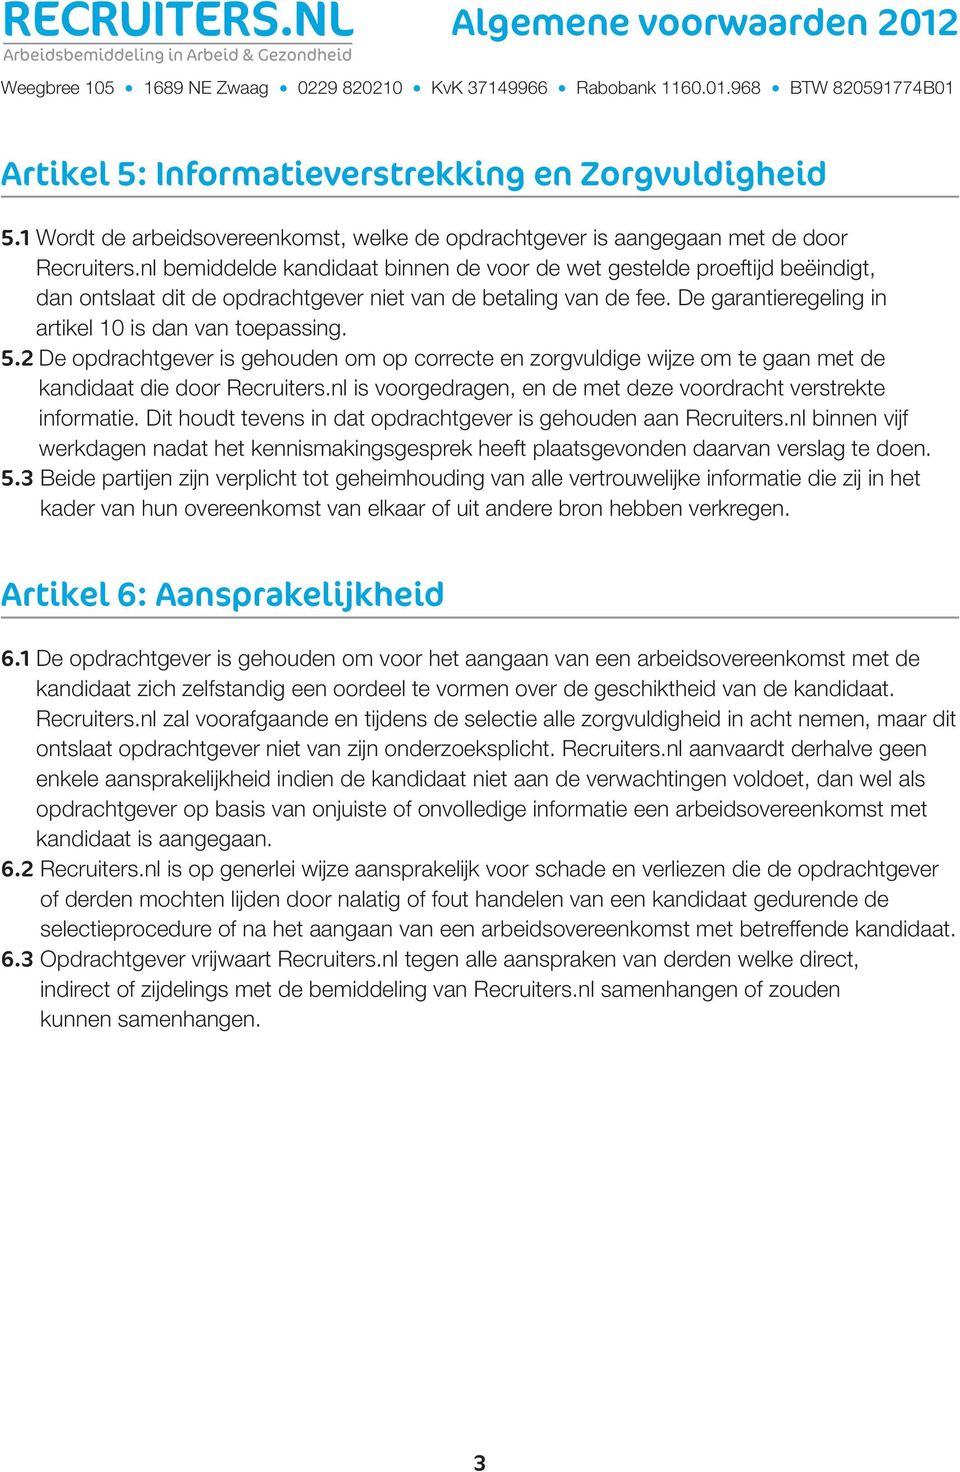 5.2 De opdrachtgever is gehouden om op correcte en zorgvuldige wijze om te gaan met de kandidaat die door Recruiters.nl is voorgedragen, en de met deze voordracht verstrekte informatie.